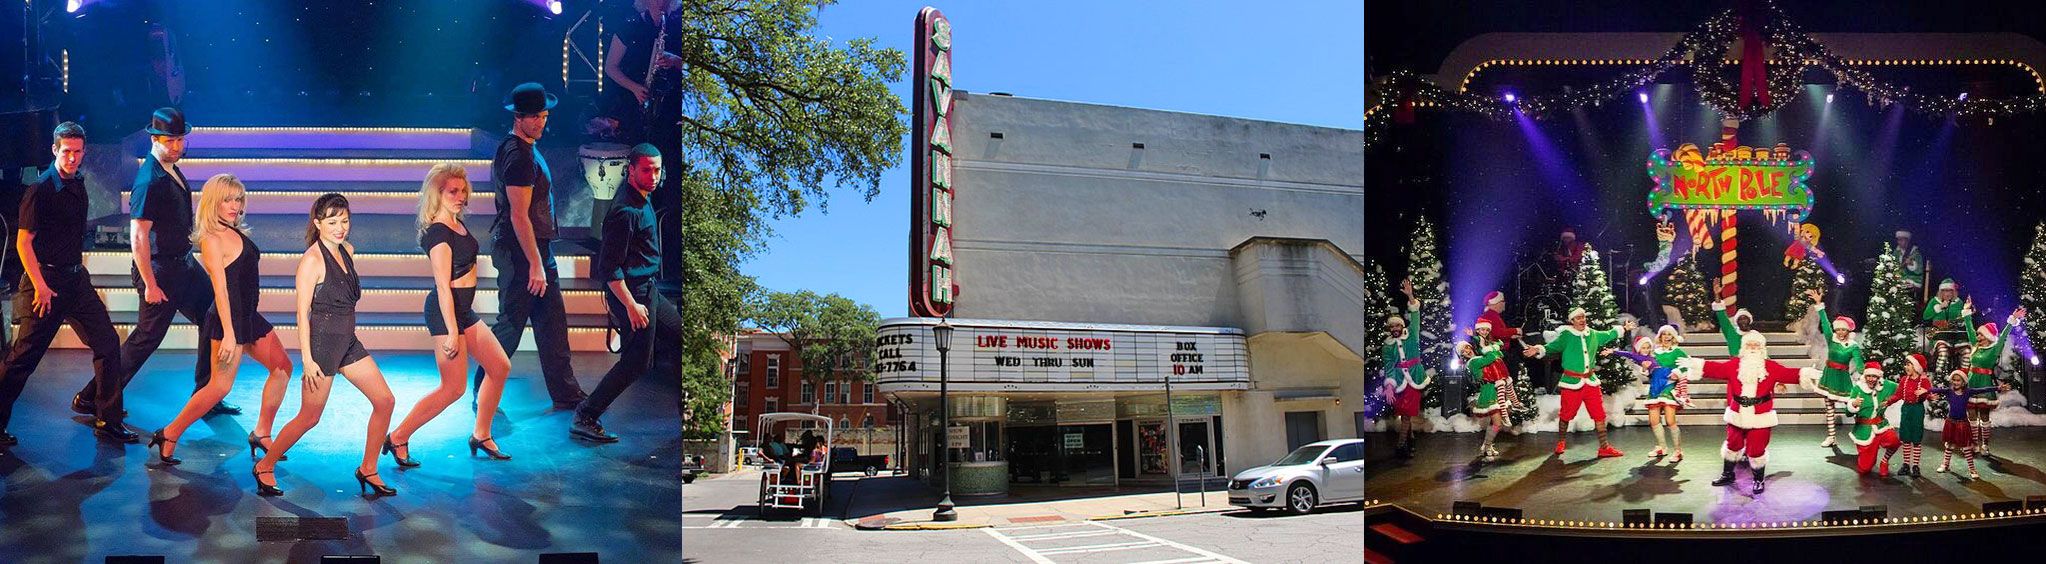 Historic Savannah Theatre